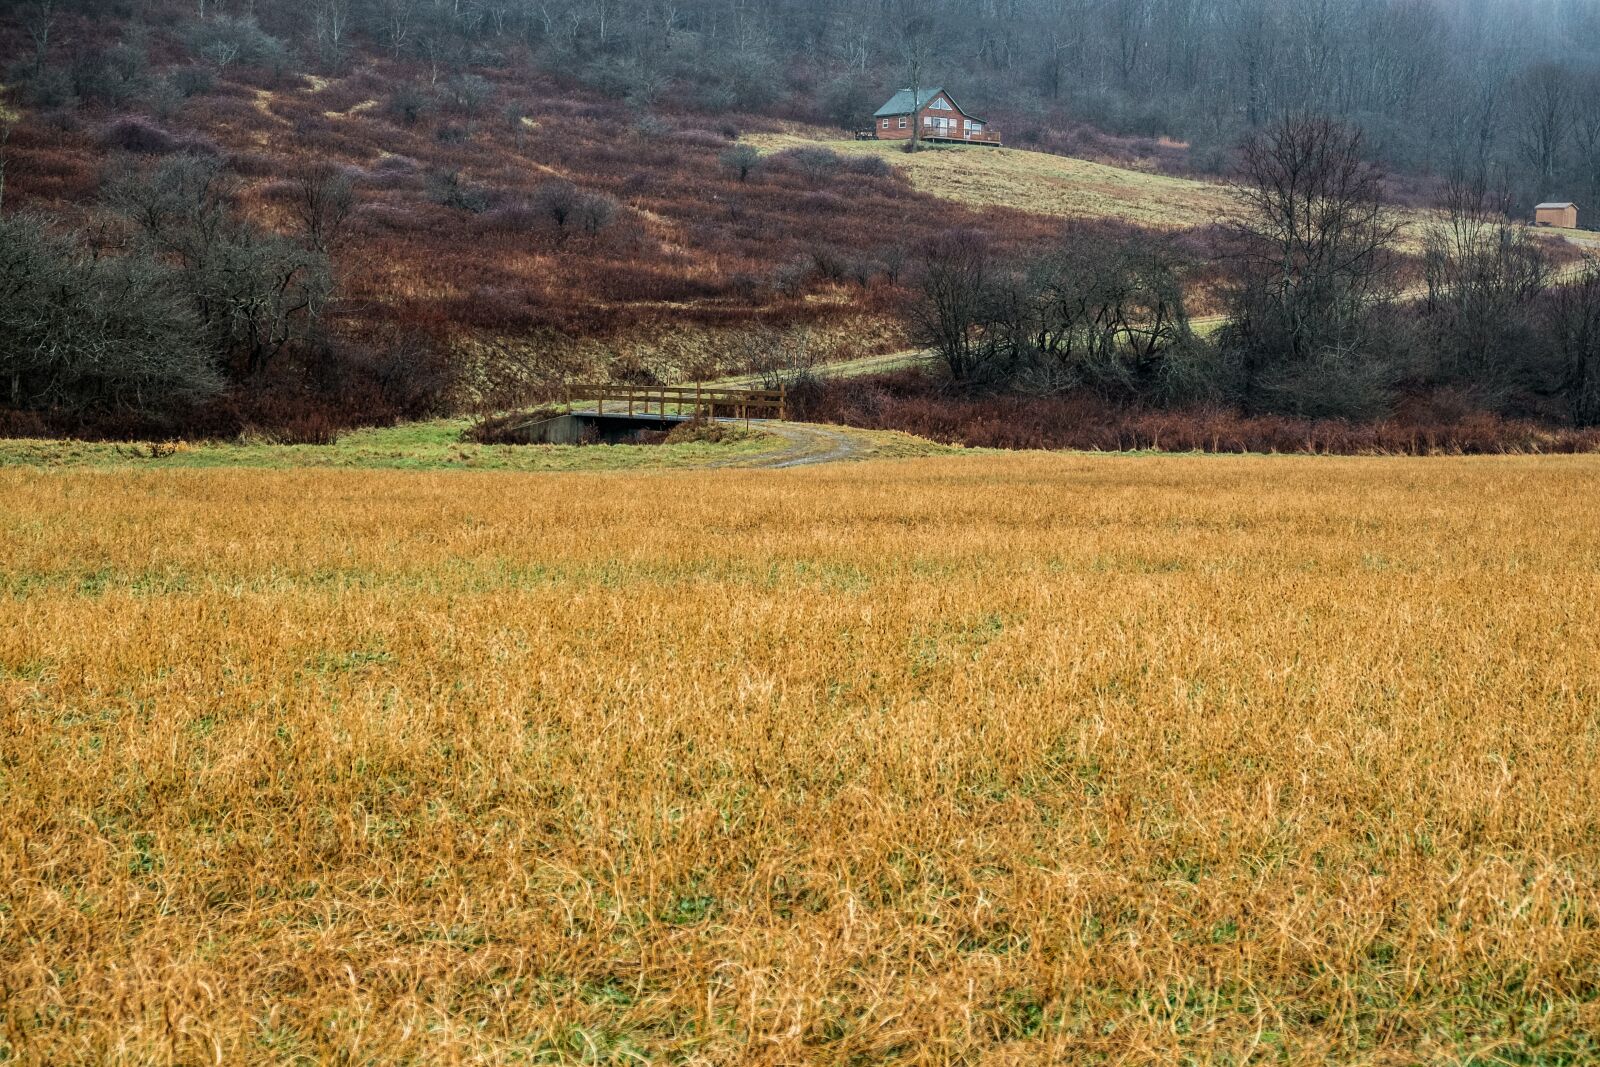 Fujifilm X-E1 sample photo. Field, landscape, rural photography